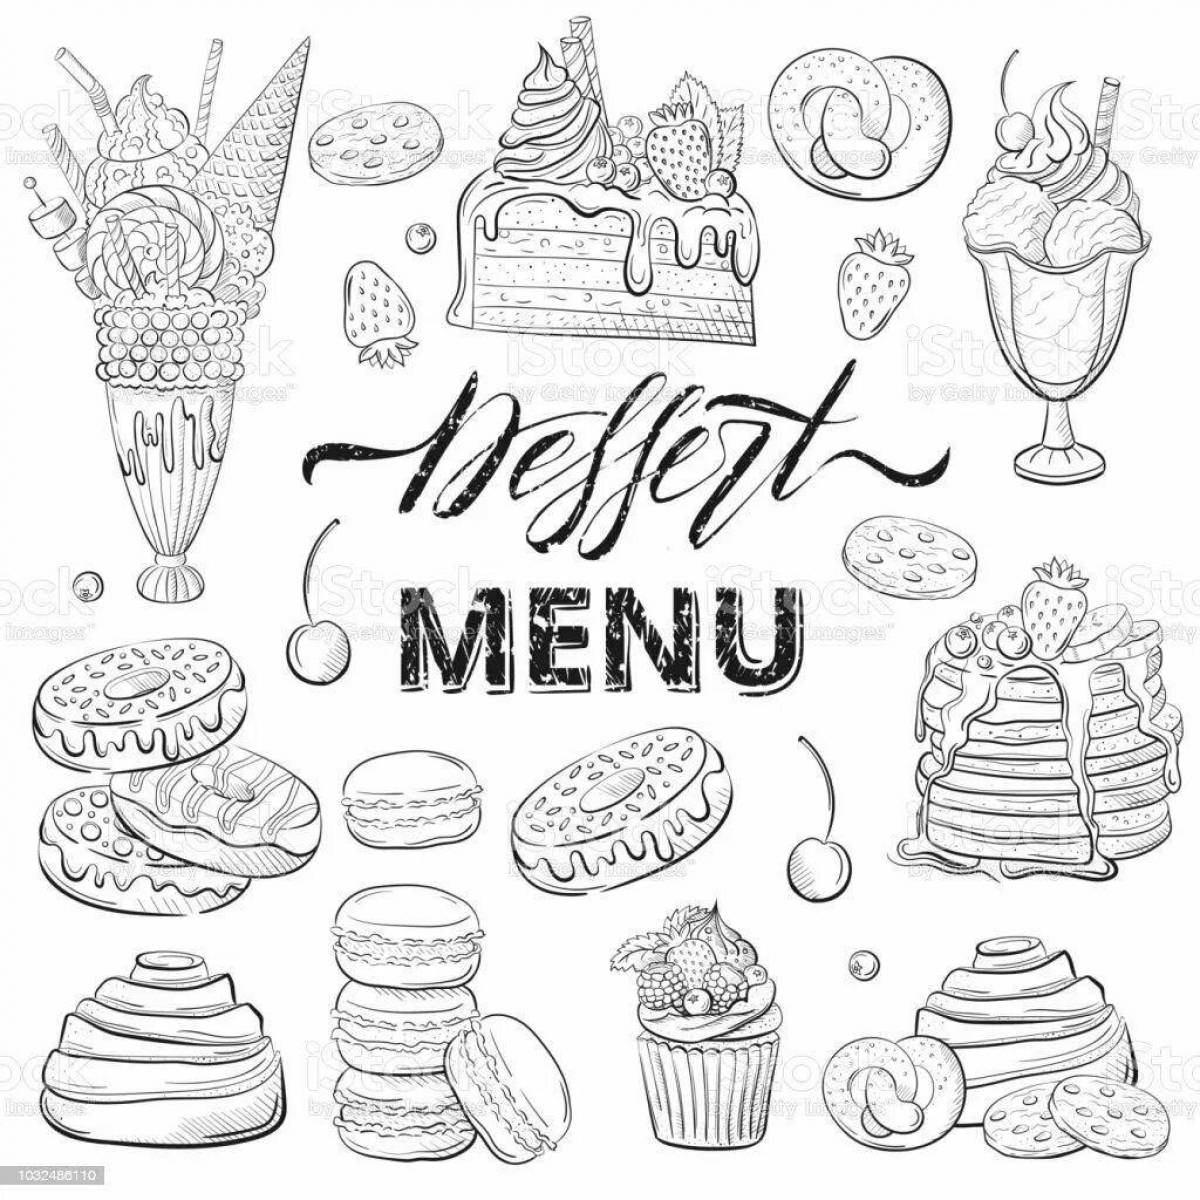 Attractive restaurant menu coloring page